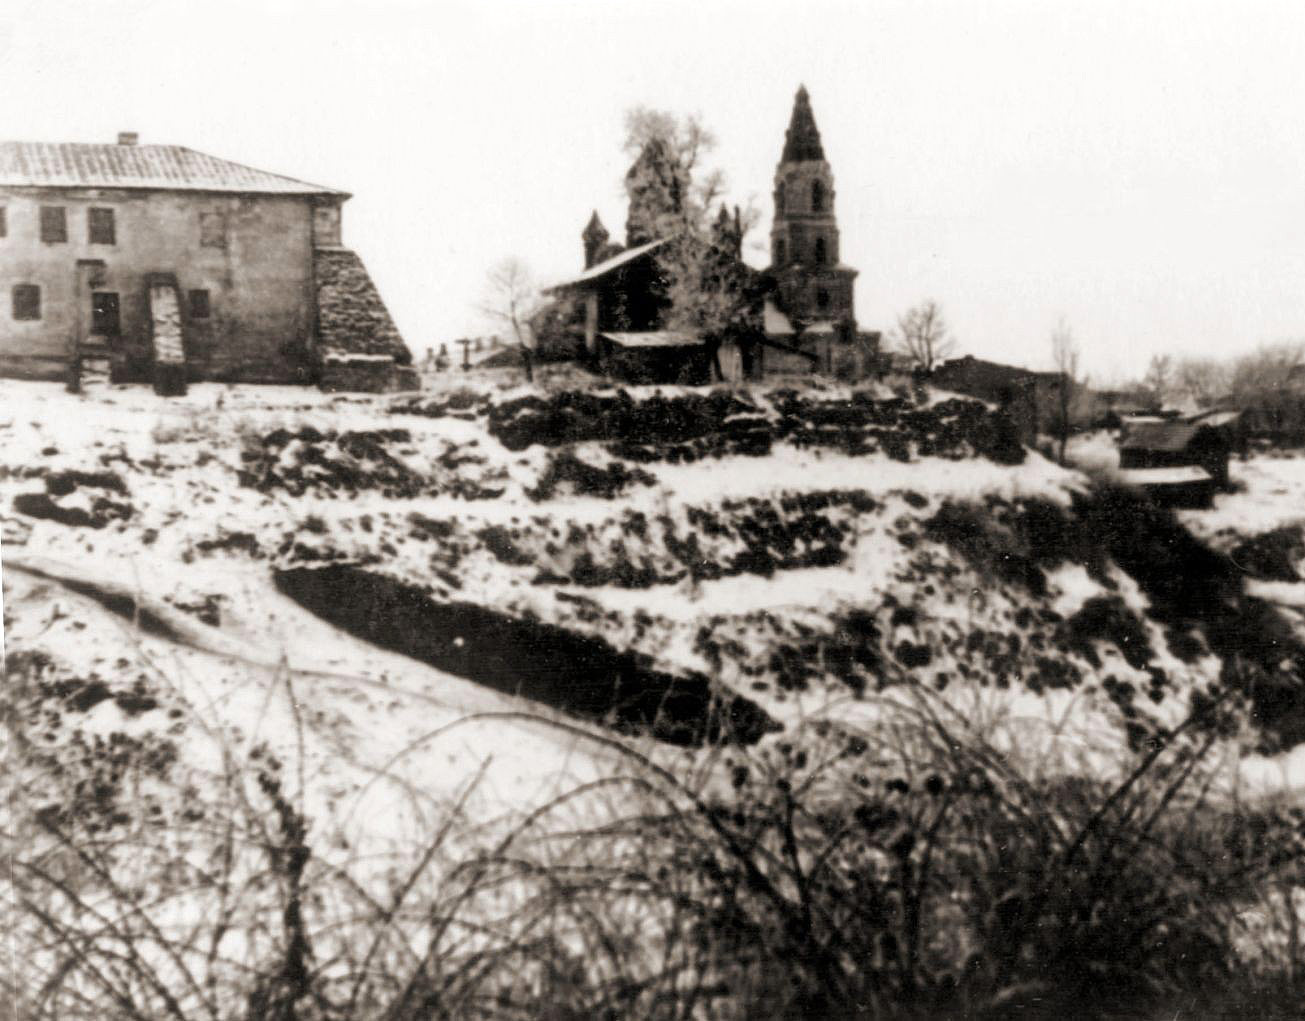 Zdjęcie żytomierskiego zamczyska, wykonane w 1959 roku. Źródło - zt4ever.org.ua